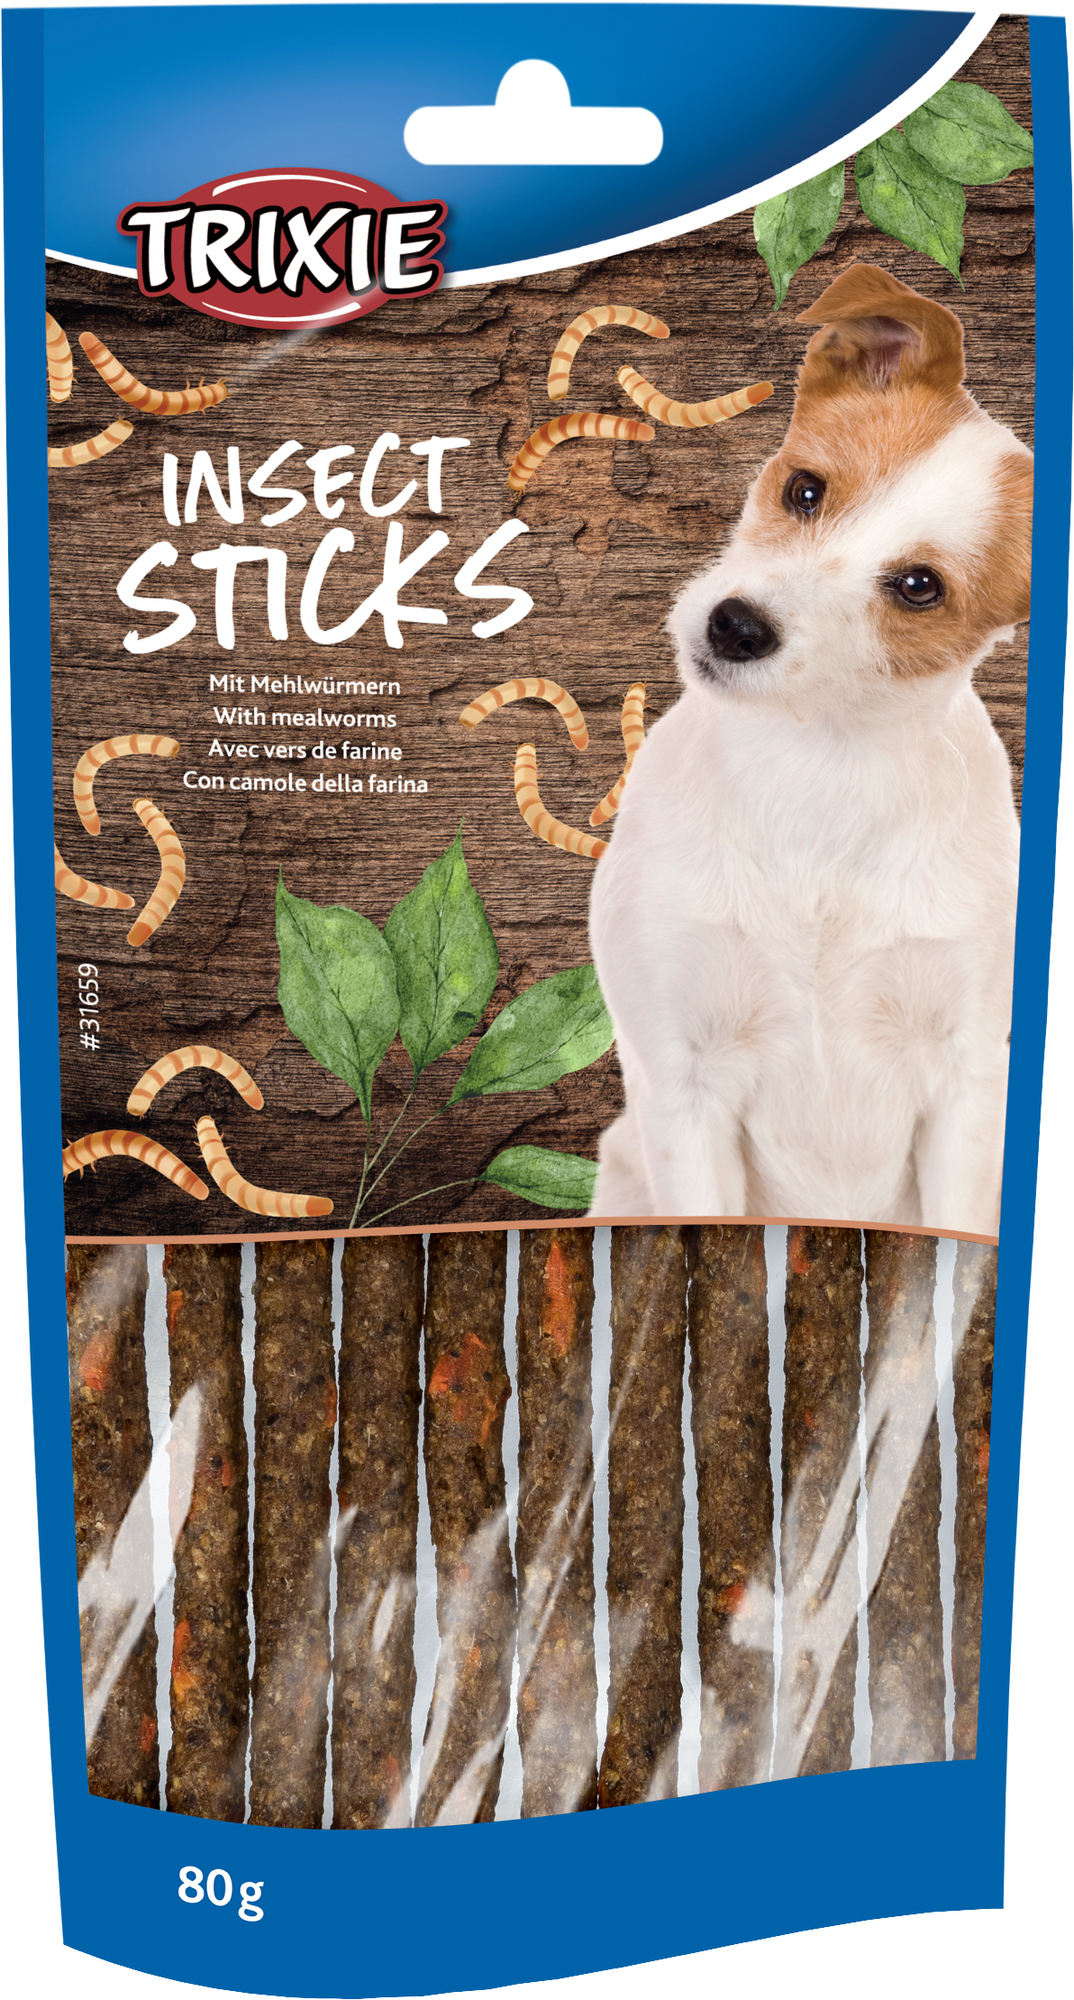 Insect Sticks con gusanos de la harina para perros